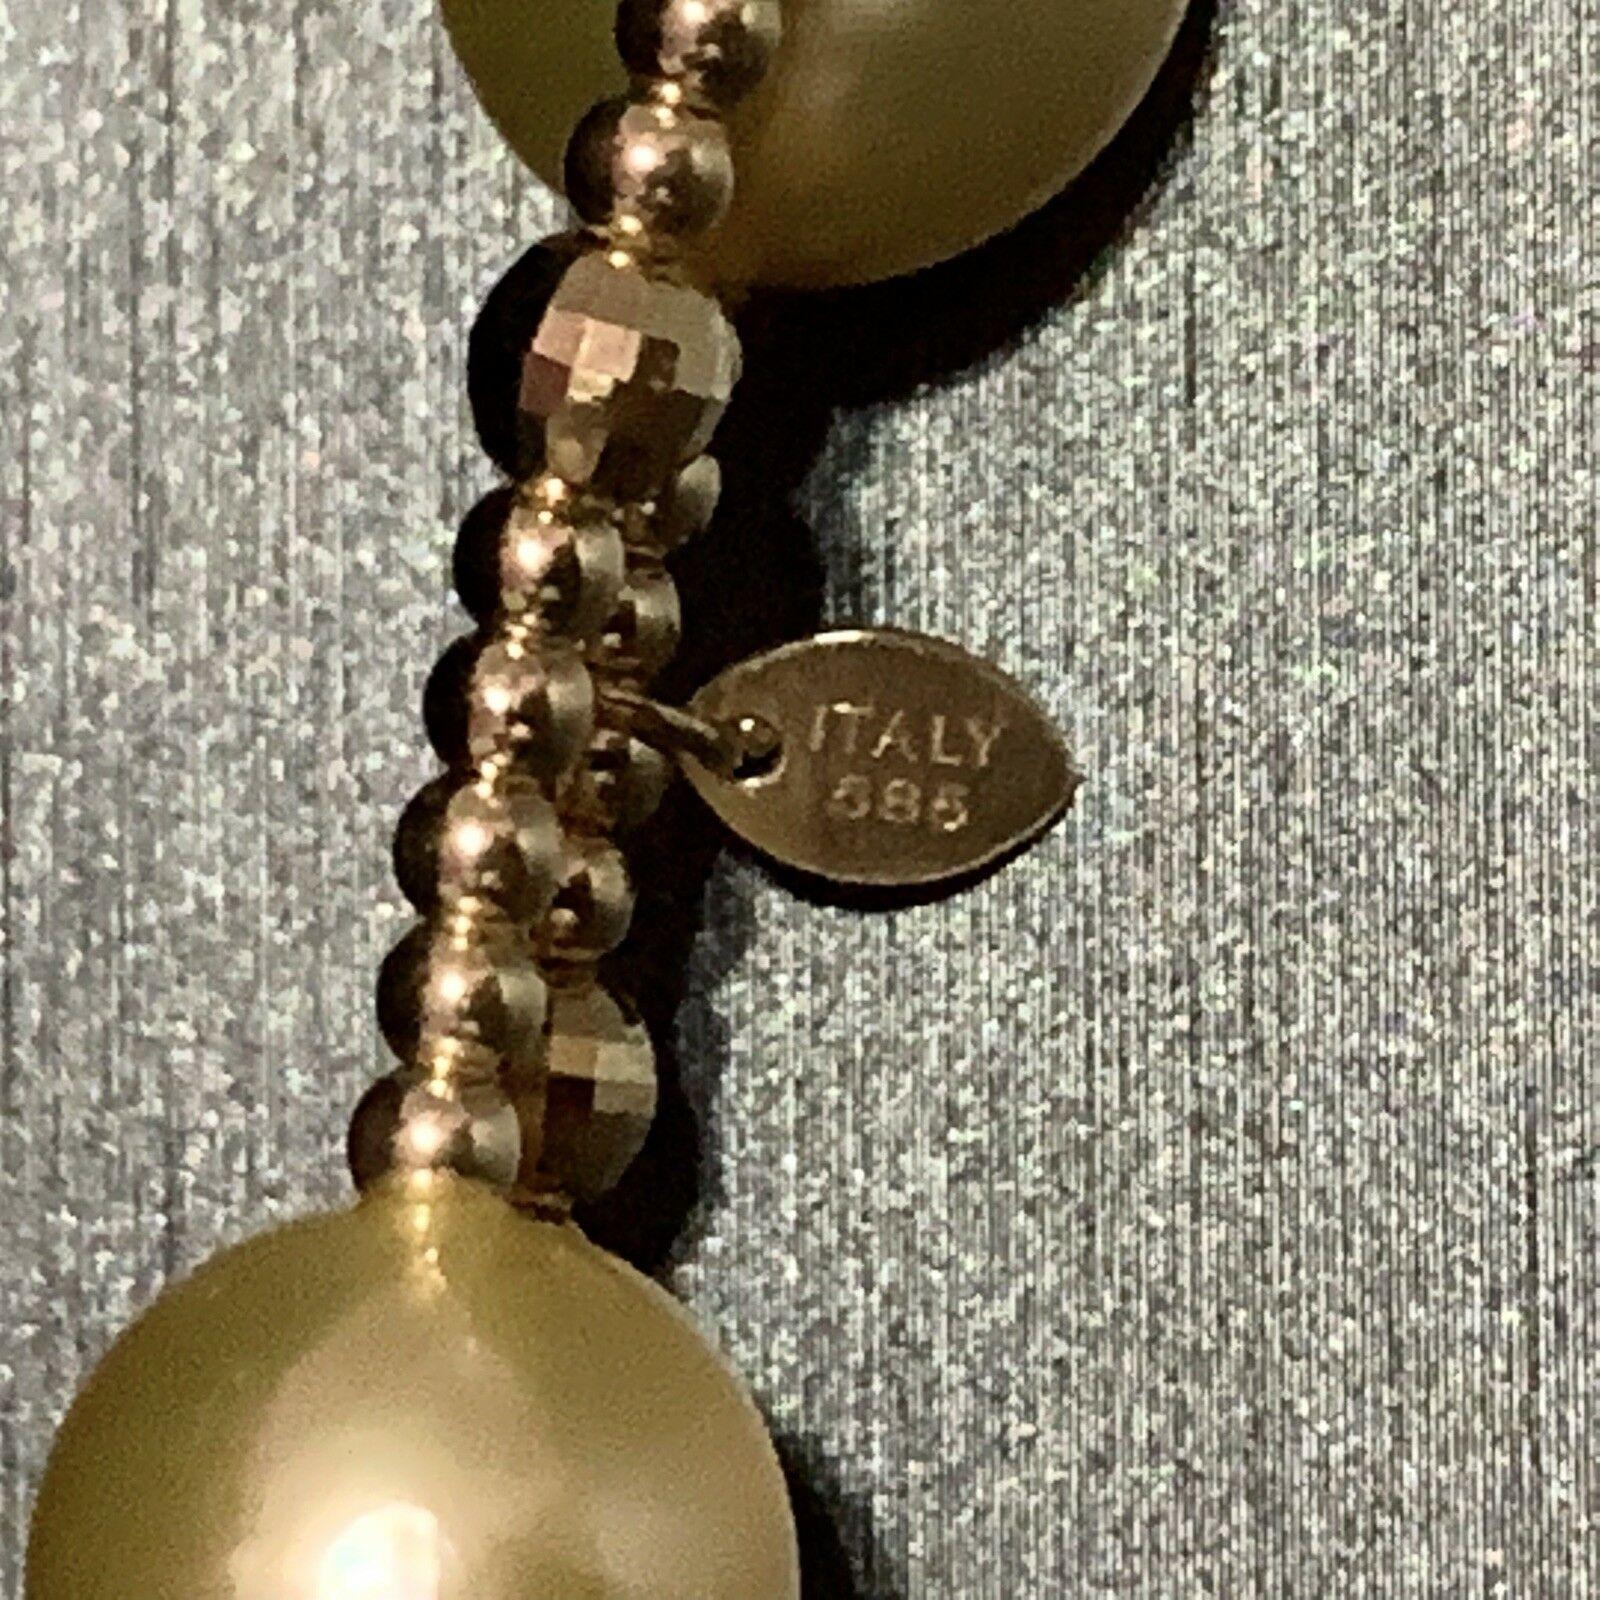 Feine Qualität Südsee Perle Choker Halskette 14k Gold 11,50 mm Italien zertifiziert $3,450 820422

Dies ist ein einzigartiges, maßgeschneidertes, glamouröses Schmuckstück!

IN ITALIEN GEFERTIGT

Nichts sagt mehr 